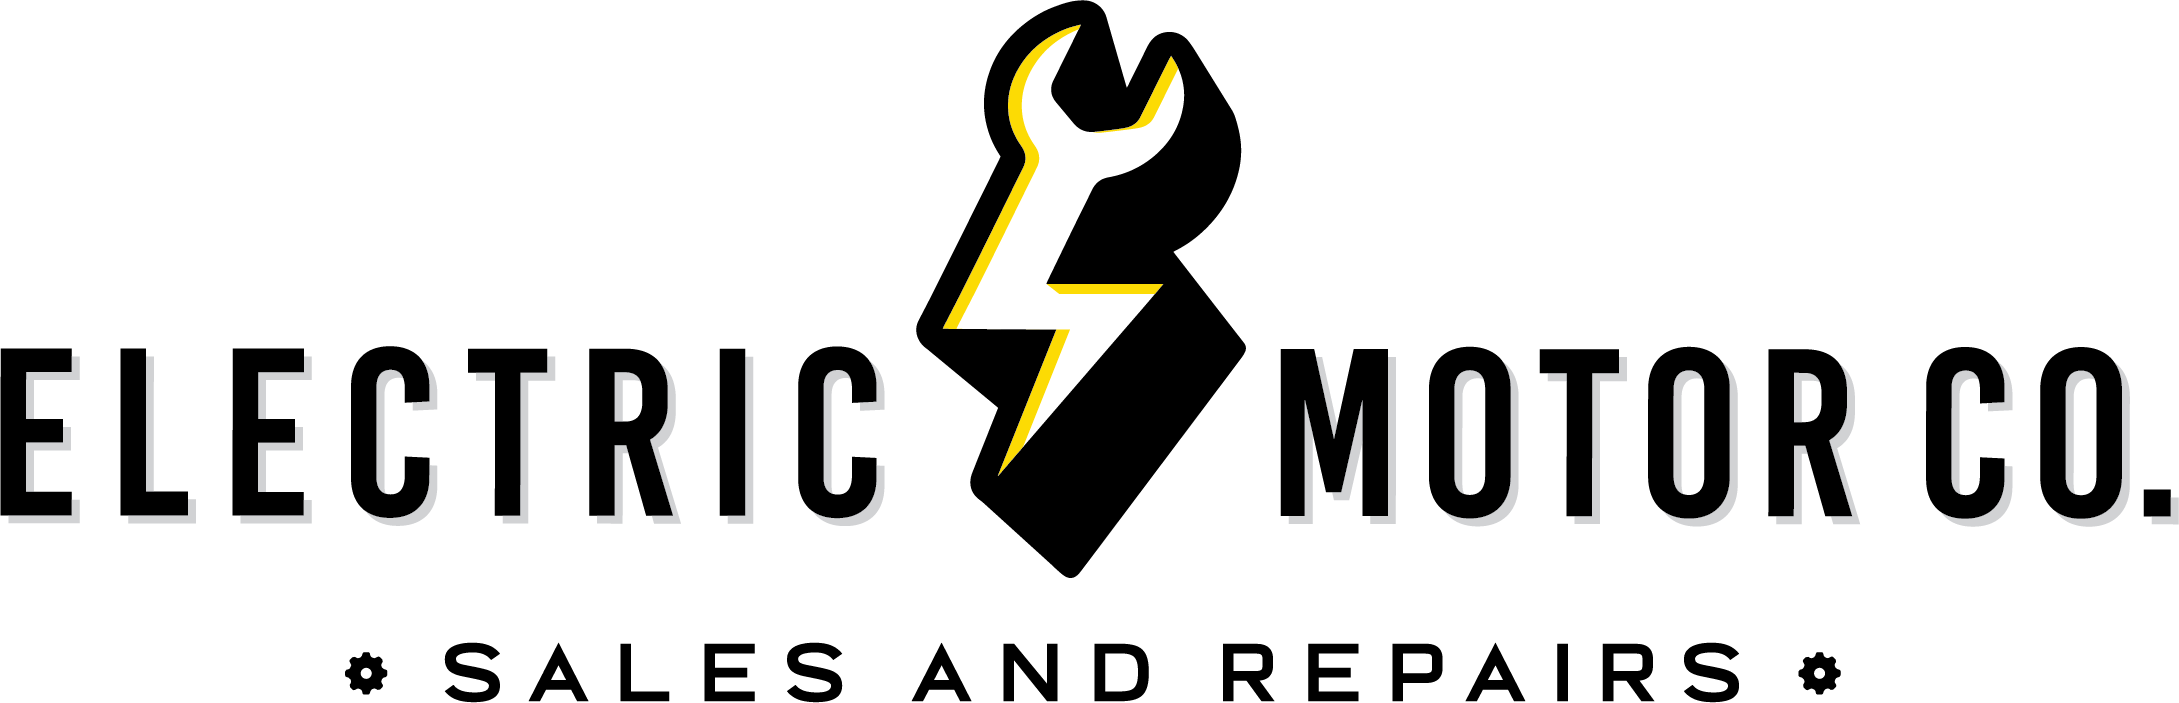 Electric Motor Sales and Repairs logo